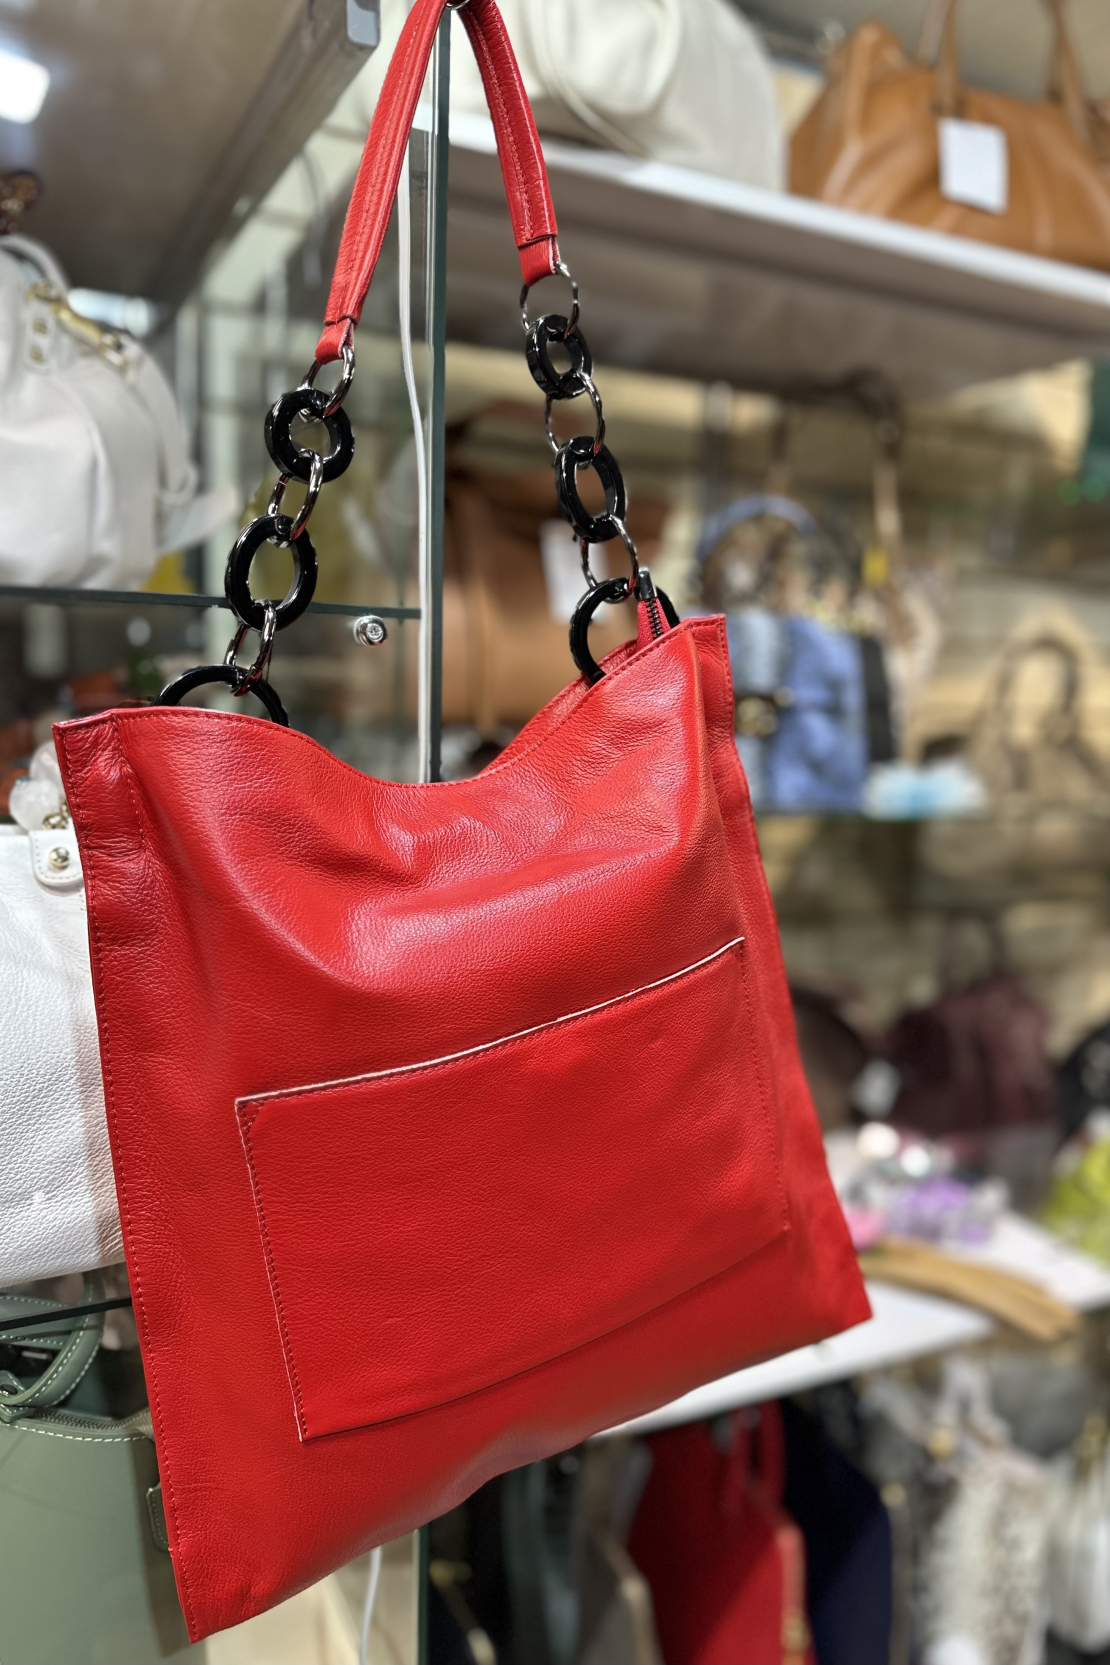 красную сумку в магазине